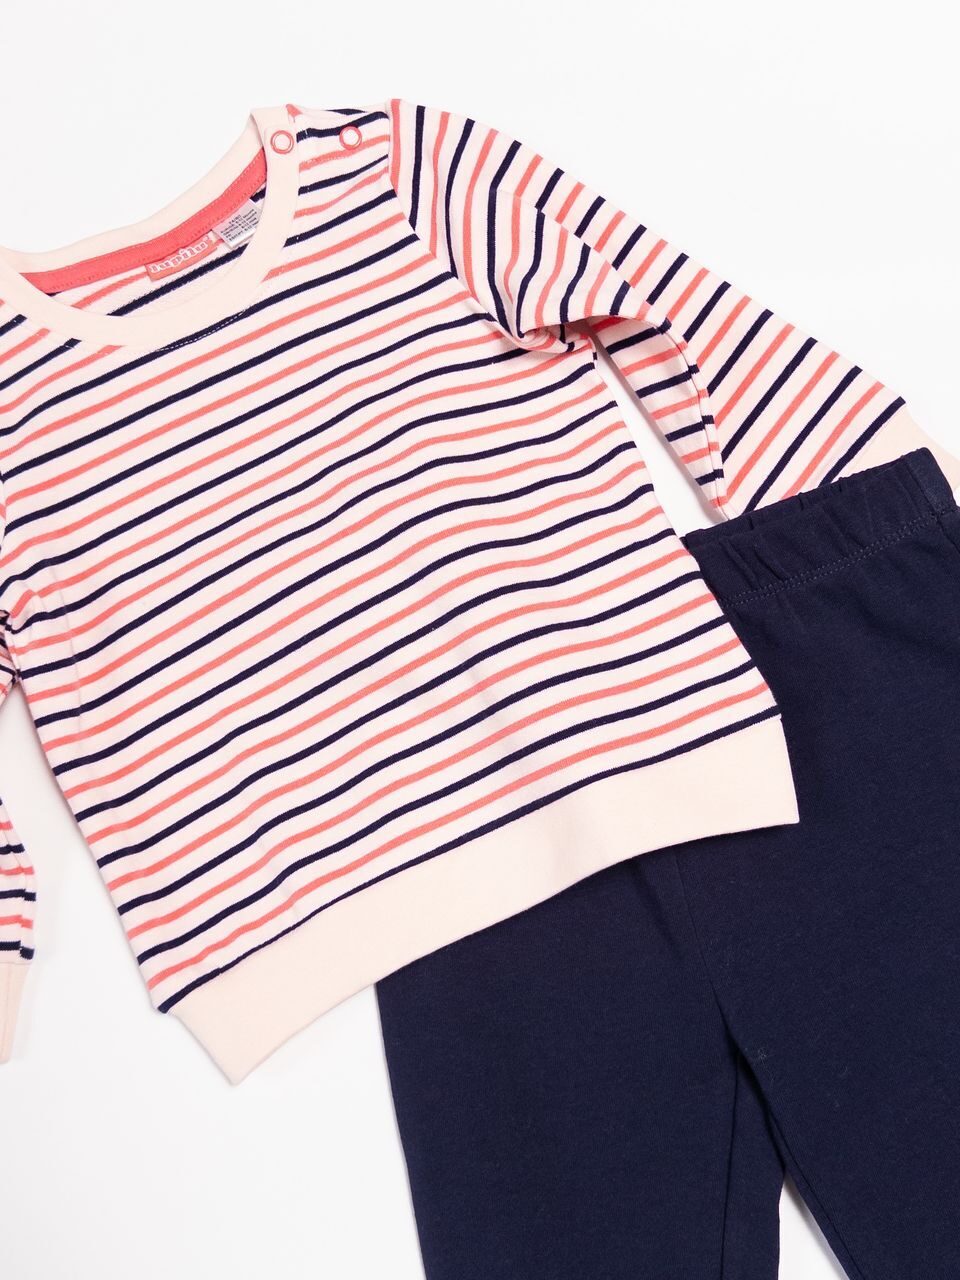 Комплект для малышей хлопковый брюки + свитшот цвет розовый/синий/полоска 74/80 см.lupilu